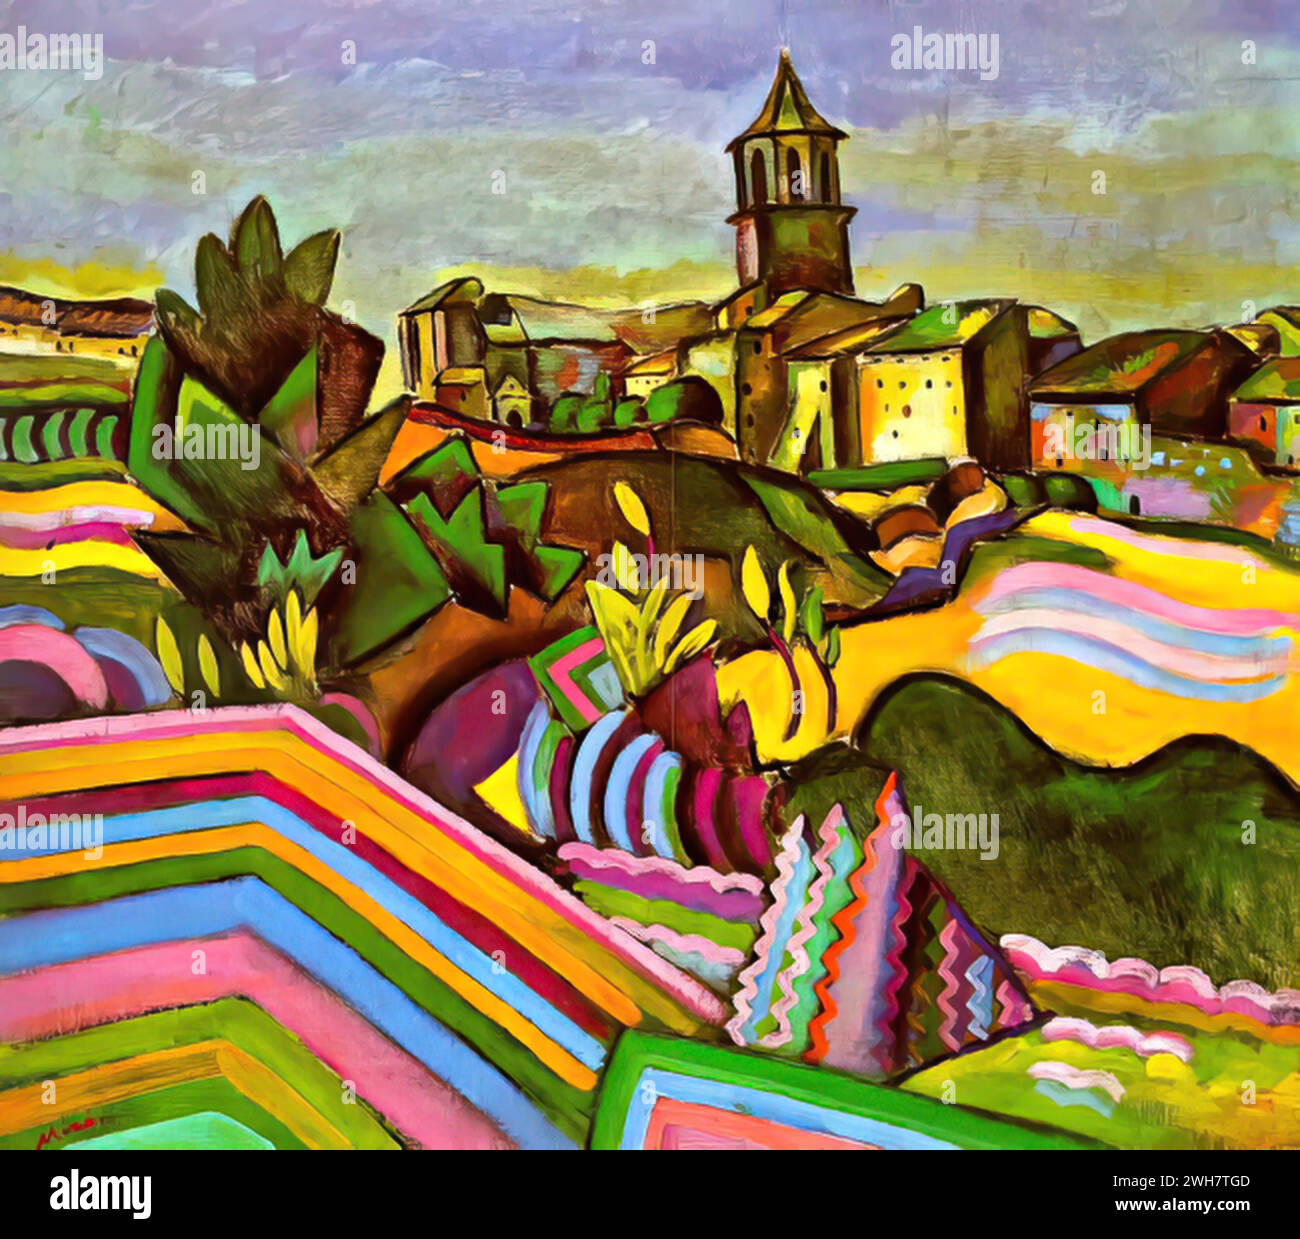 Prades, le Village, 1917 (huile sur toile) de l'artiste Miro, Joan (1893-1983) Espagnol. Illustration de Vecteur